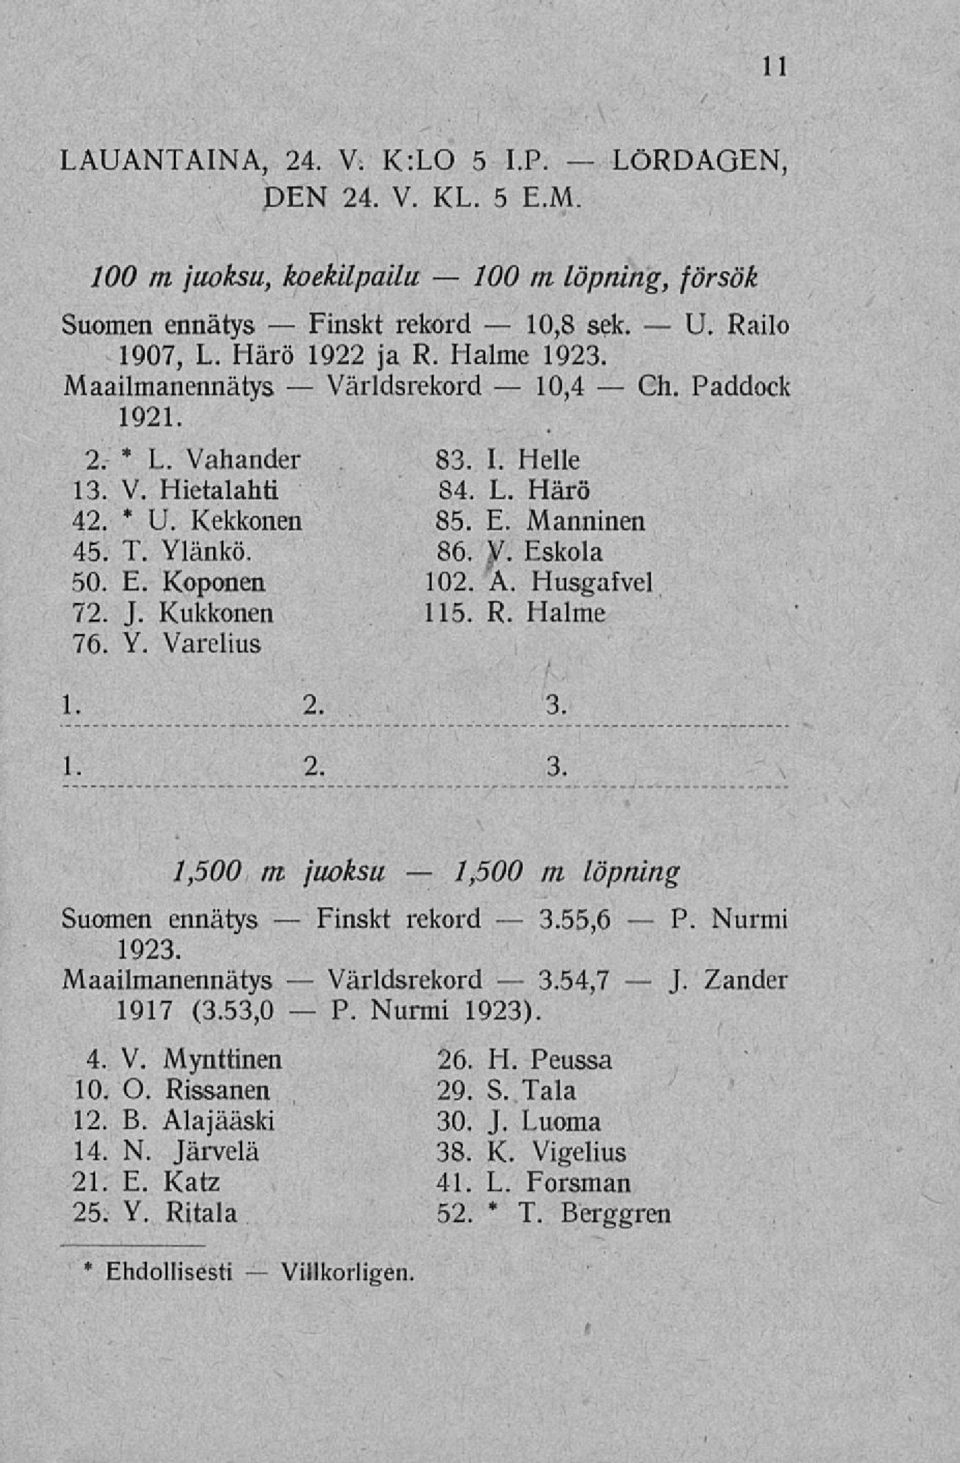 L. Härö 42. U. Kekkonen 85. E. Manninen 45. T. Ylänkö. 86. V. Eskola 50. E. Koponen 102. A. Husgafvel 72. J. Kukkonen 115. R. Halme 76. Y. Varelius 1. 2. 3. 1. 2. 3. 1,500 m juoksu Suomen ennätys 1923.